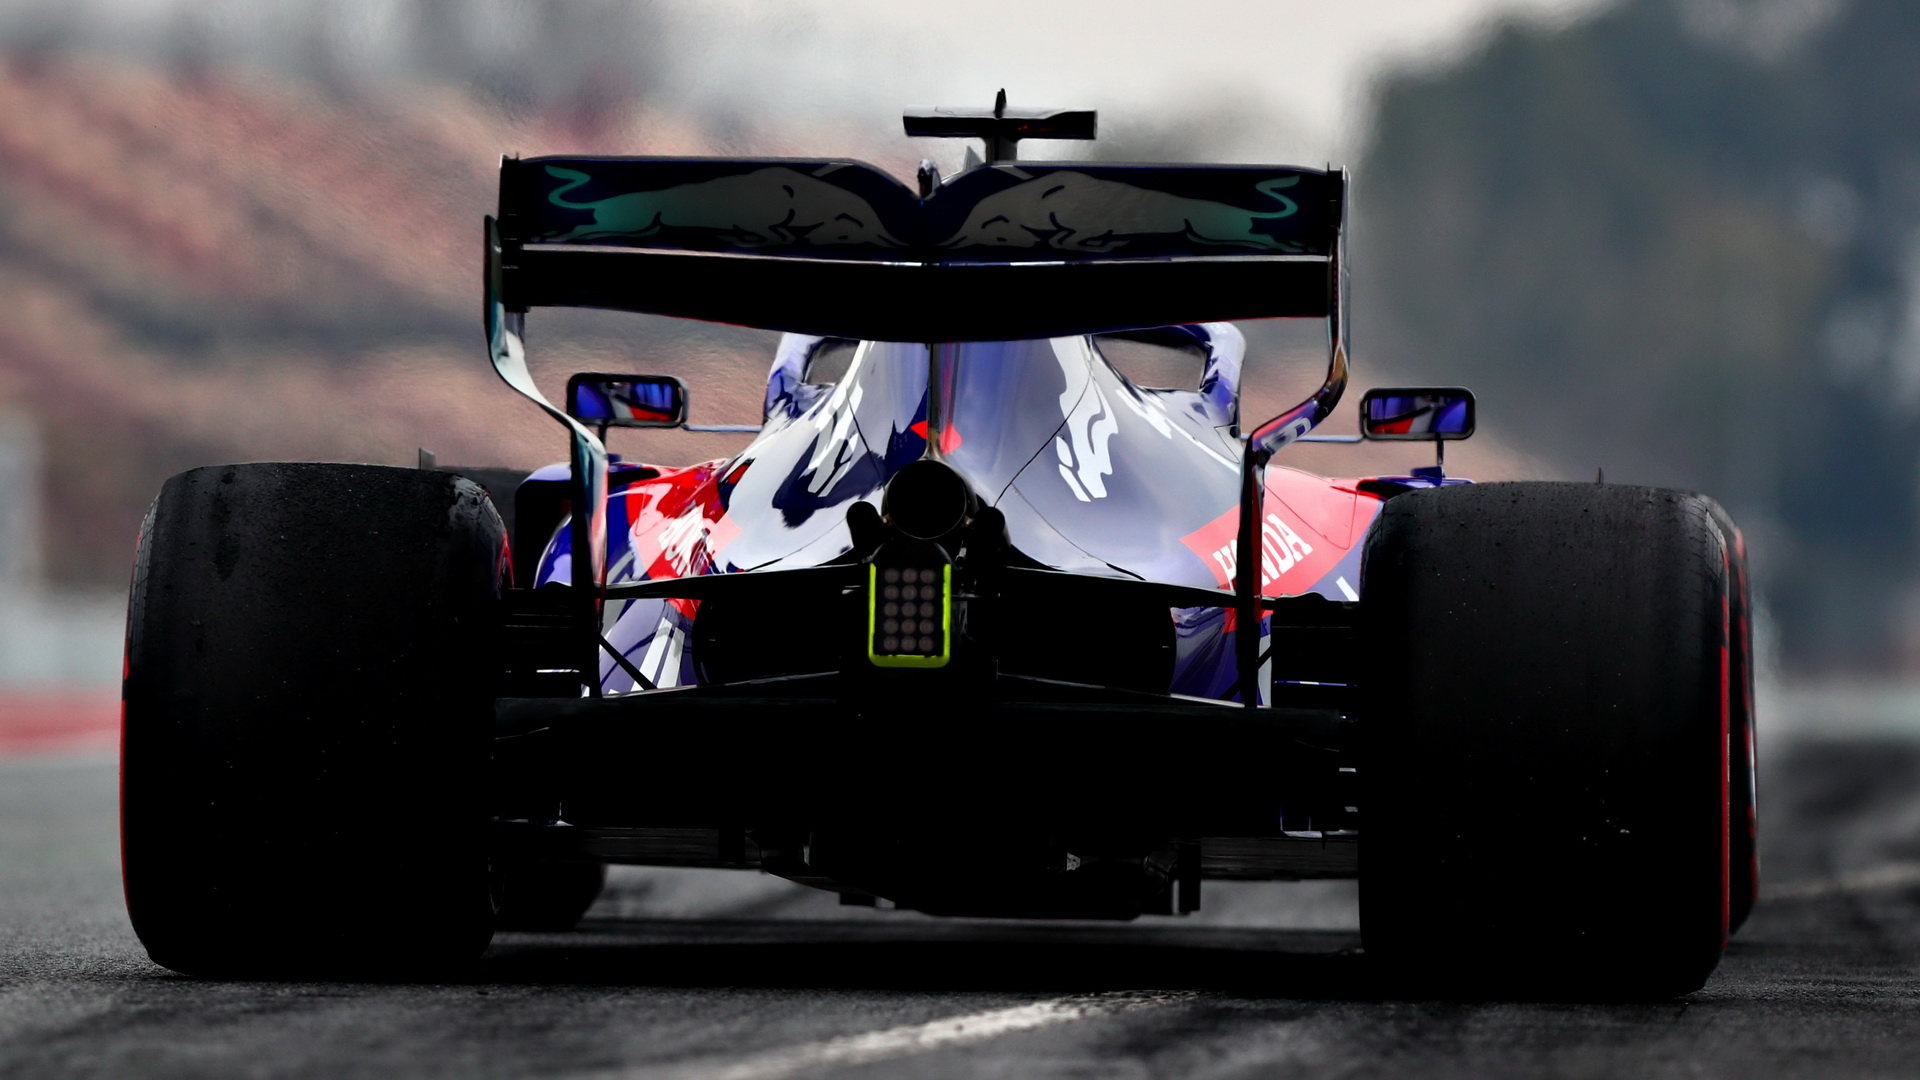 Daniil Kvjat s novým vozem Toro Rosso v Barceloně